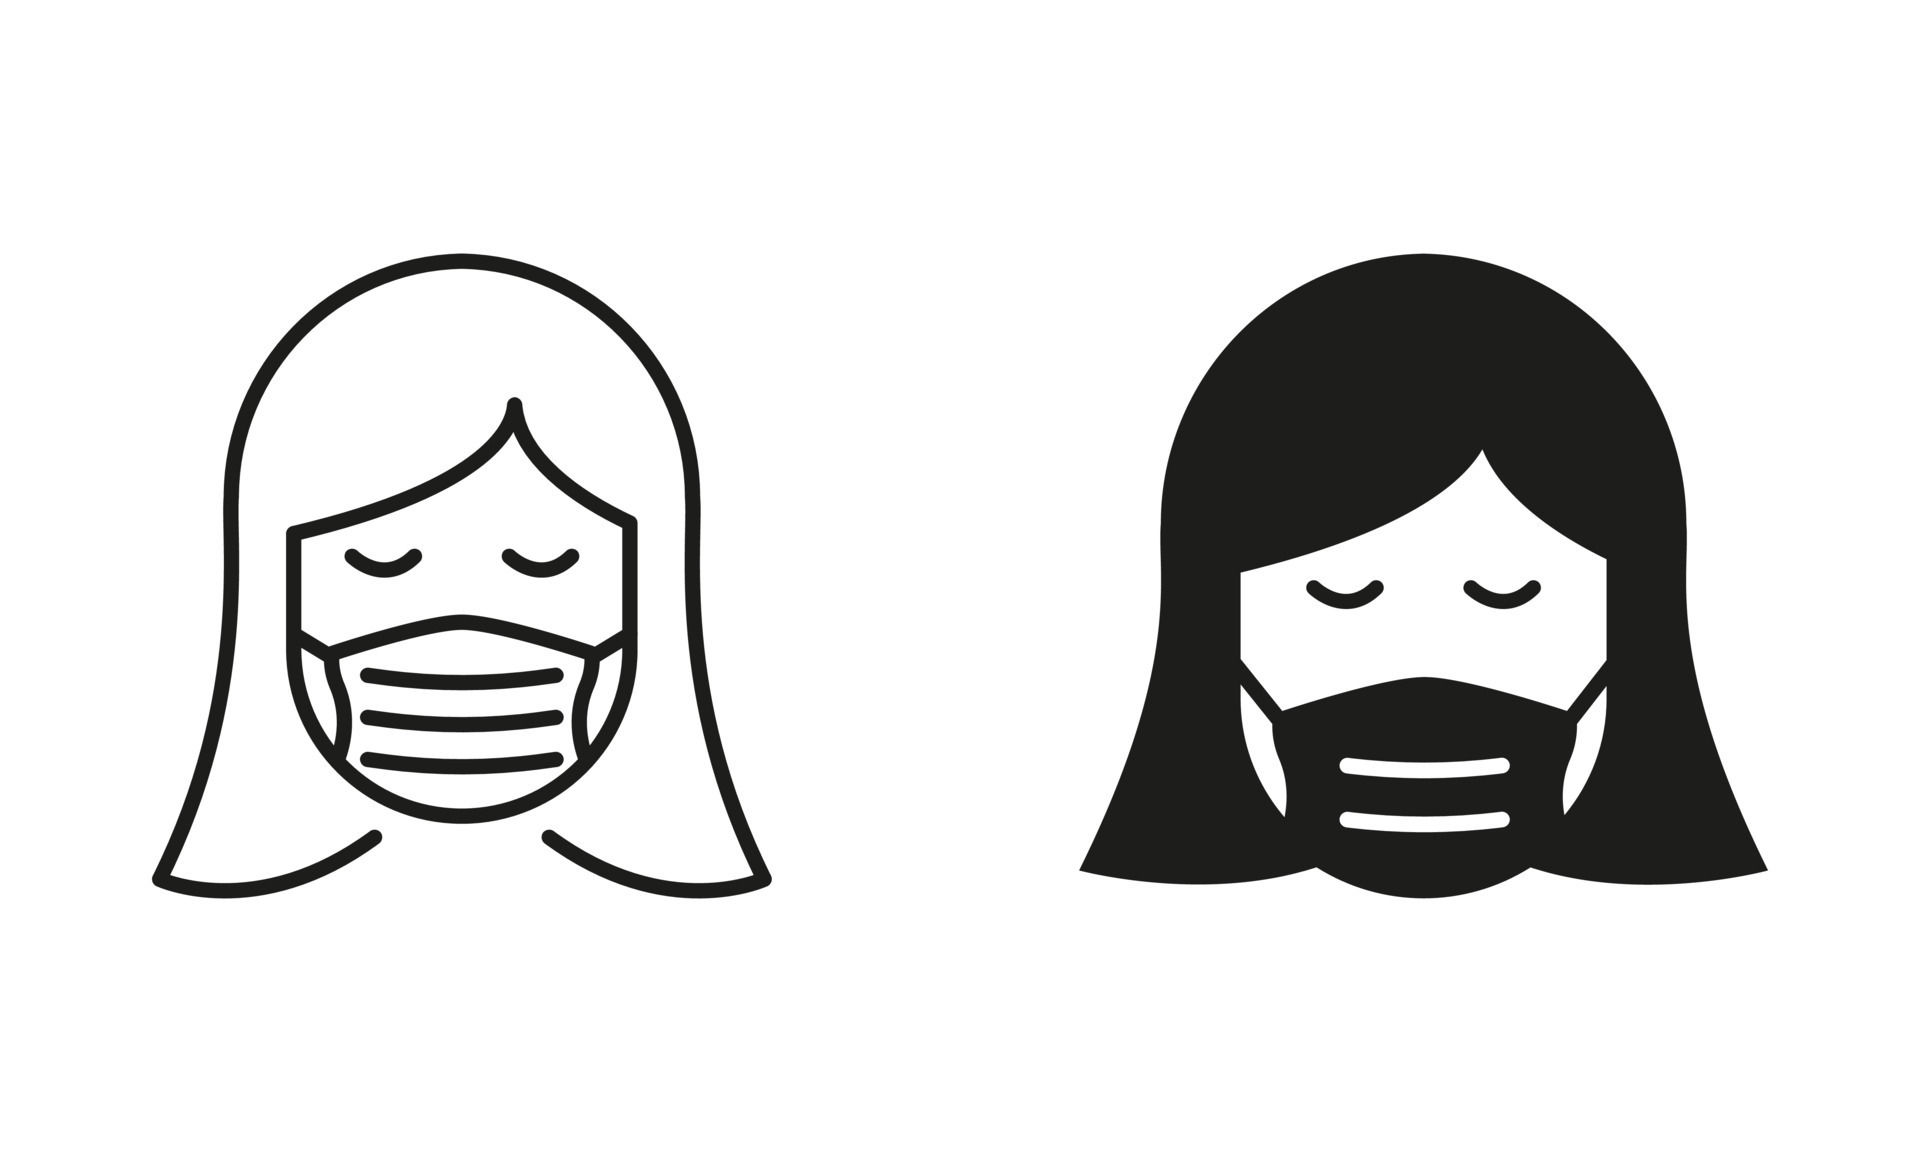 https://static.vecteezy.com/ti/vecteur-libre/p3/26487462-femme-dans-medical-visage-masque-ligne-et-silhouette-icone-ensemble-visage-protection-masque-couverture-pour-nez-et-bouche-porter-respirateur-contre-air-la-pollution-symbole-collection-isole-vecteur-illustration-vectoriel.jpg